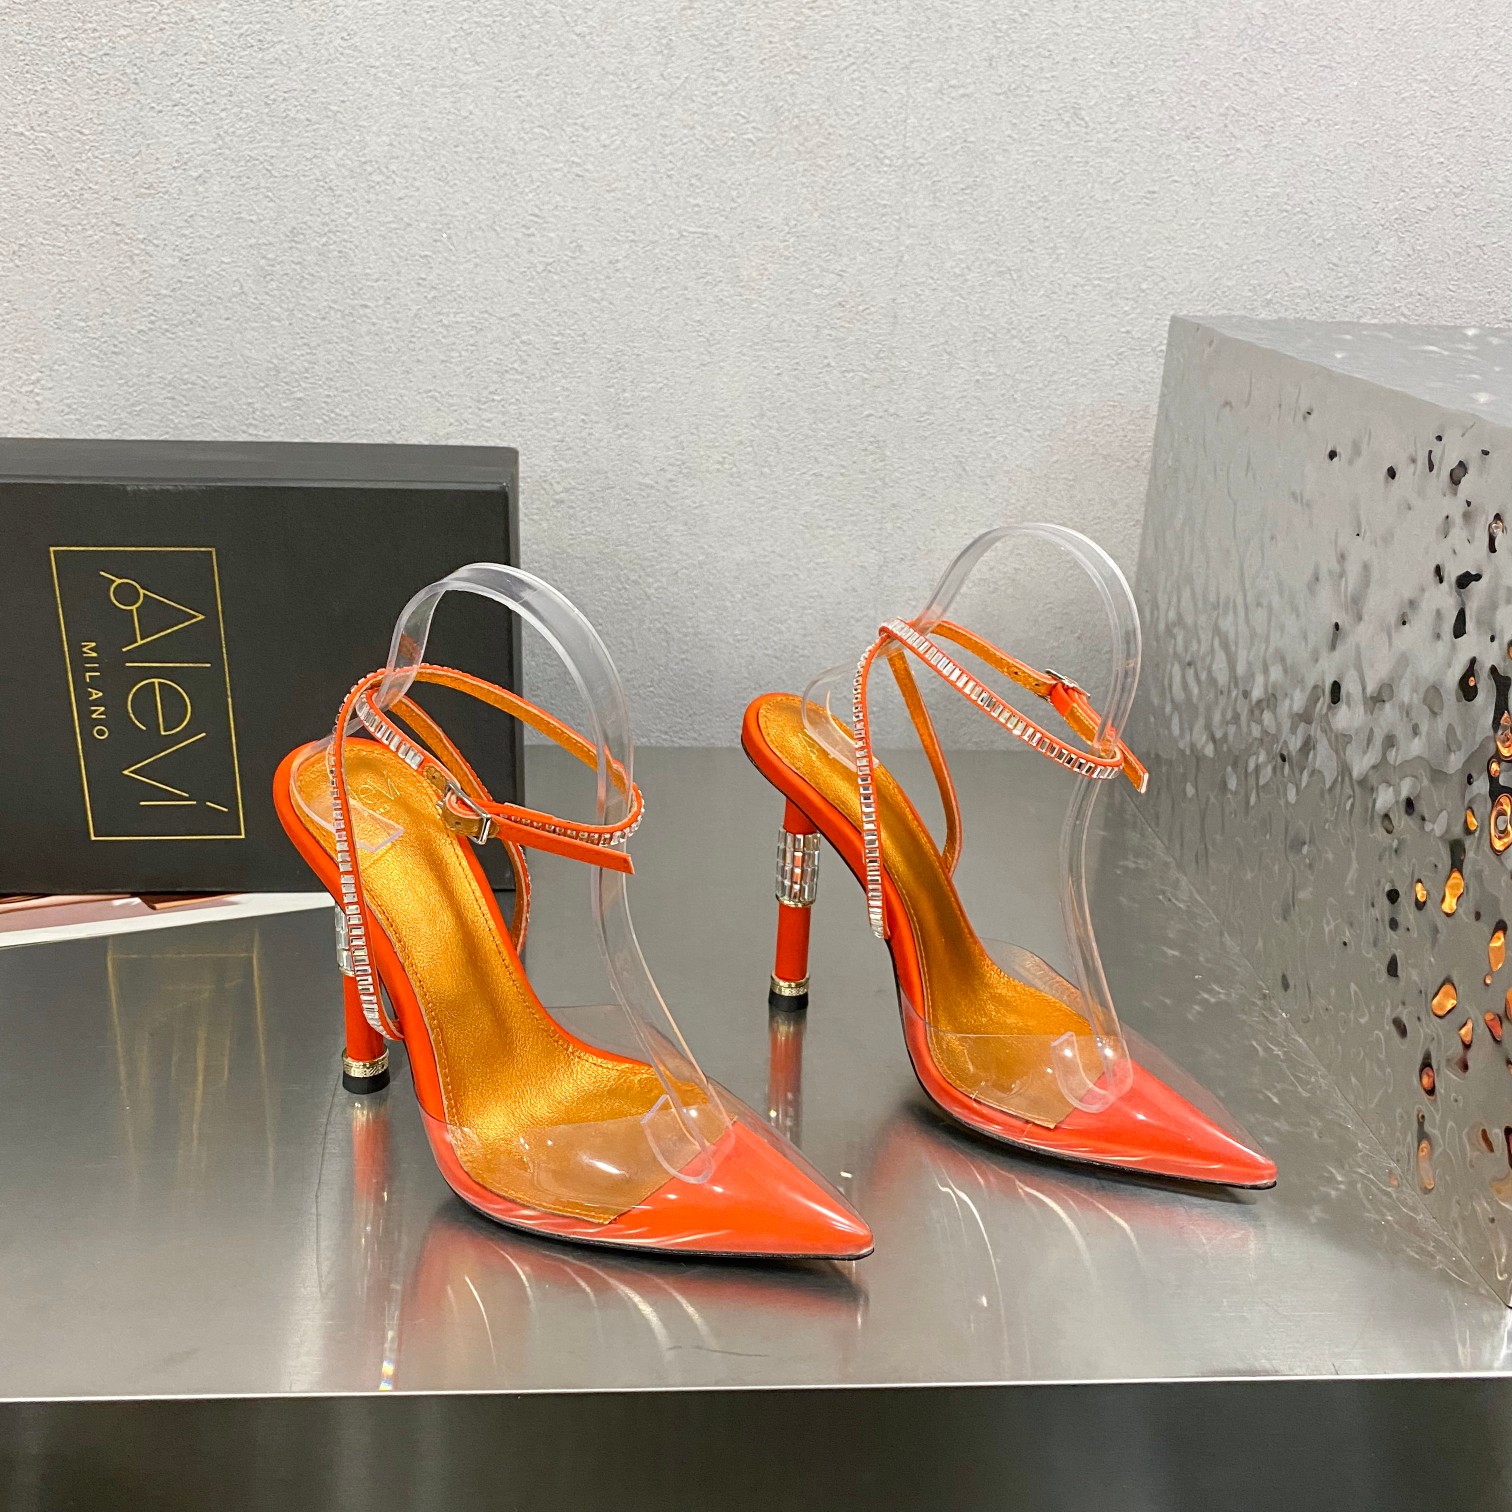 最高版本厂zjdbq                             Alevi Mlano                            阿列维·姆拉诺                                Alevi Milano胶片闪钻装饰高跟走秀凉鞋 一个享有盛誉的奢侈鞋品牌 由两位意大利本土女性共同创作 瓦伦蒂娜·米切蒂和佩拉·亚历山